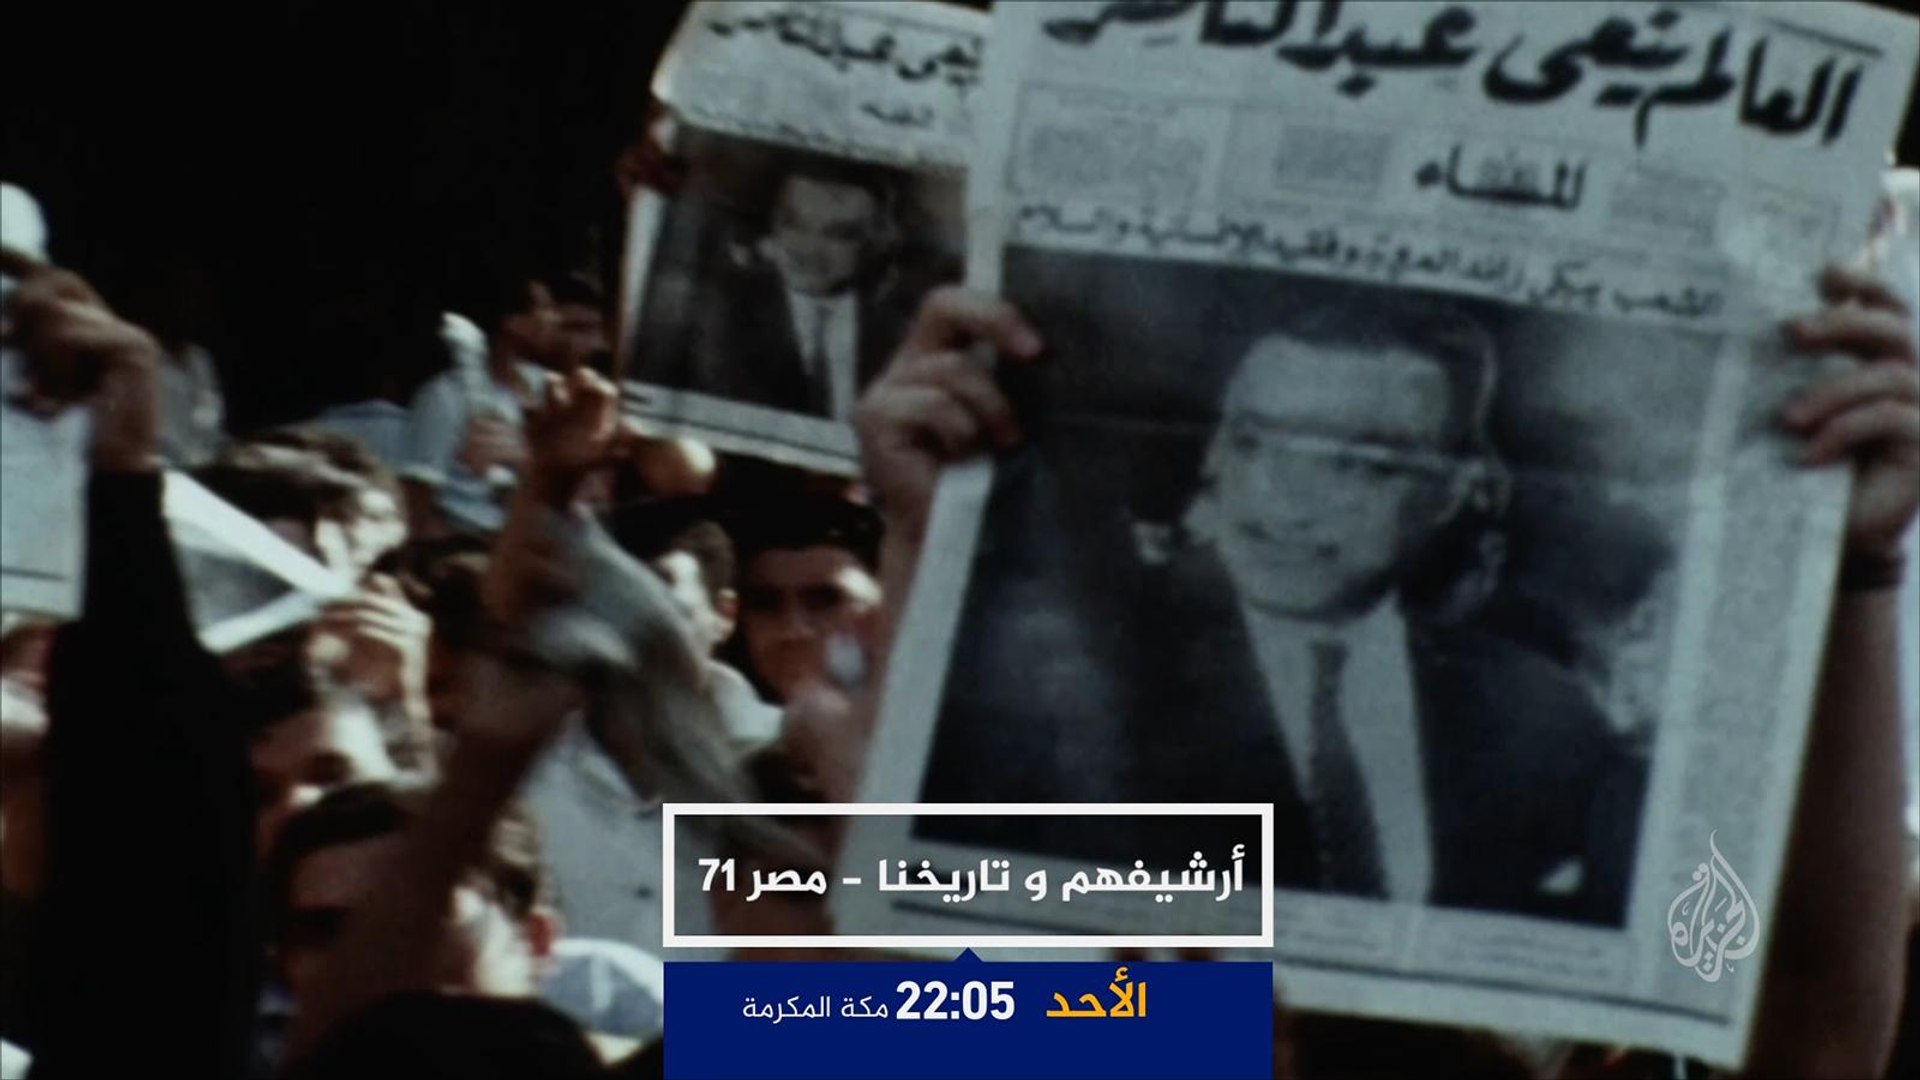 أرشيفهم وتاريخنا- مصر 71 .. القبض على الناصريين ج2 - فيديو Dailymotion